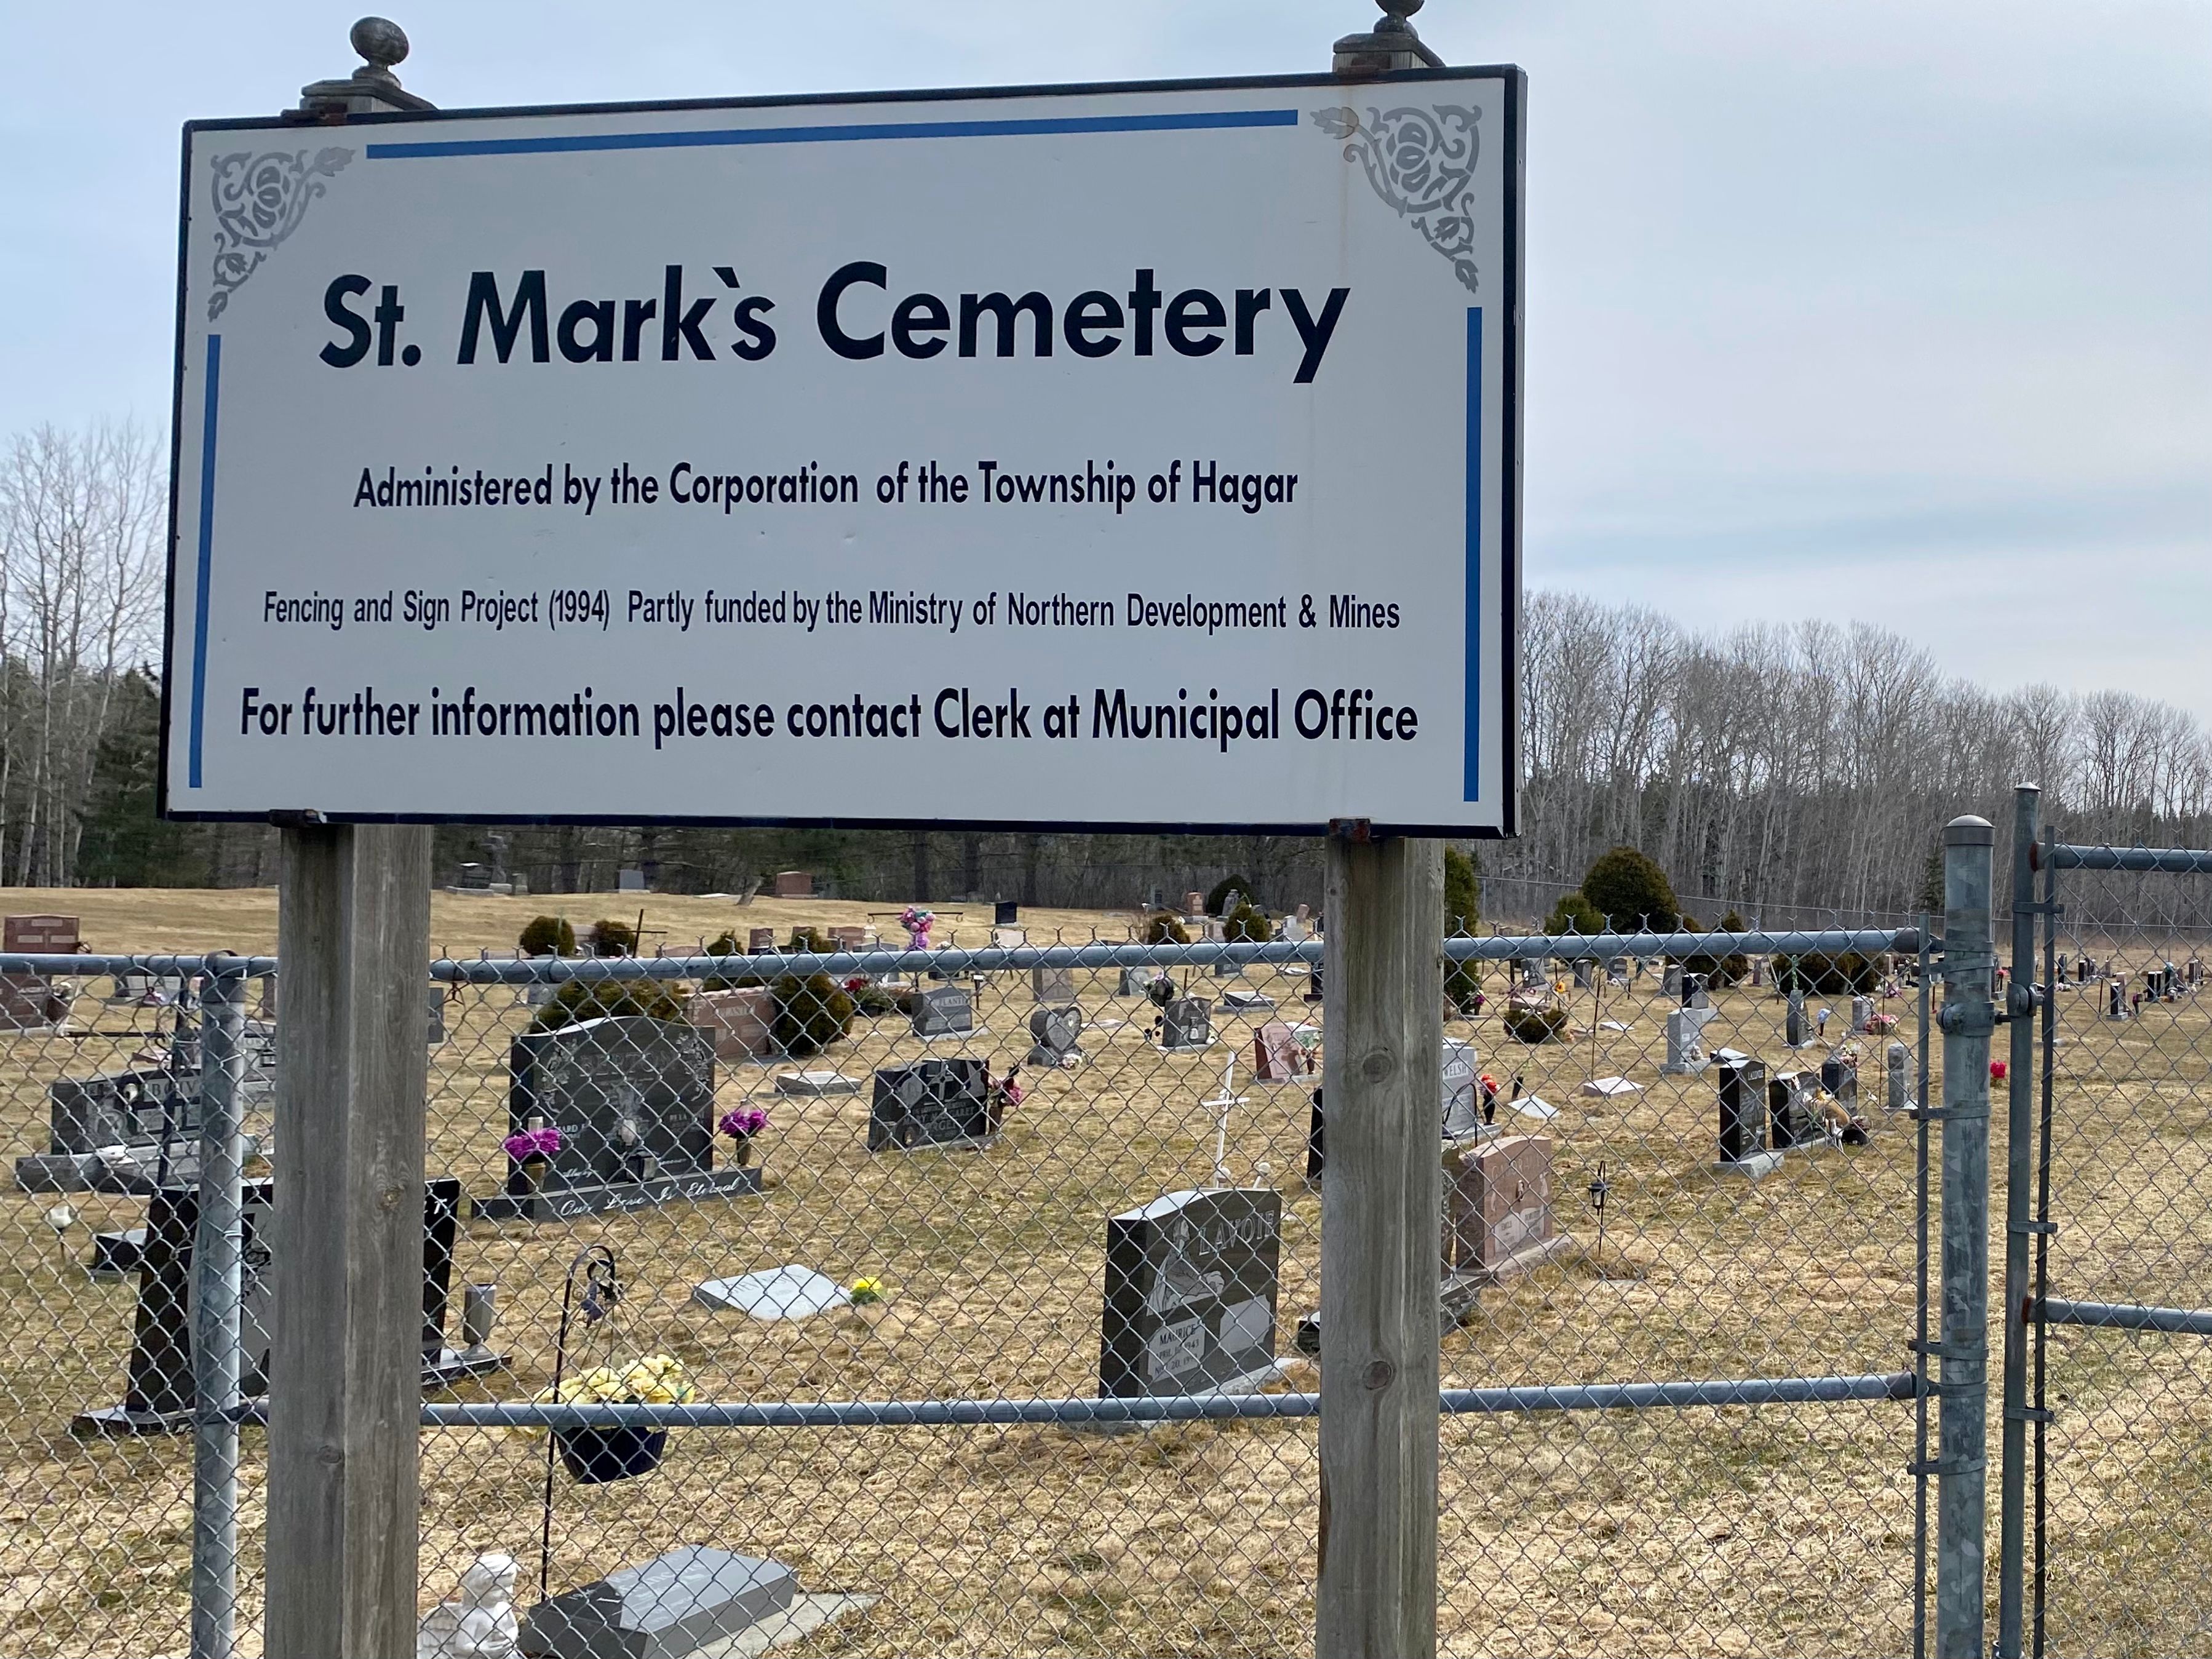 St. Mark's Cemetery